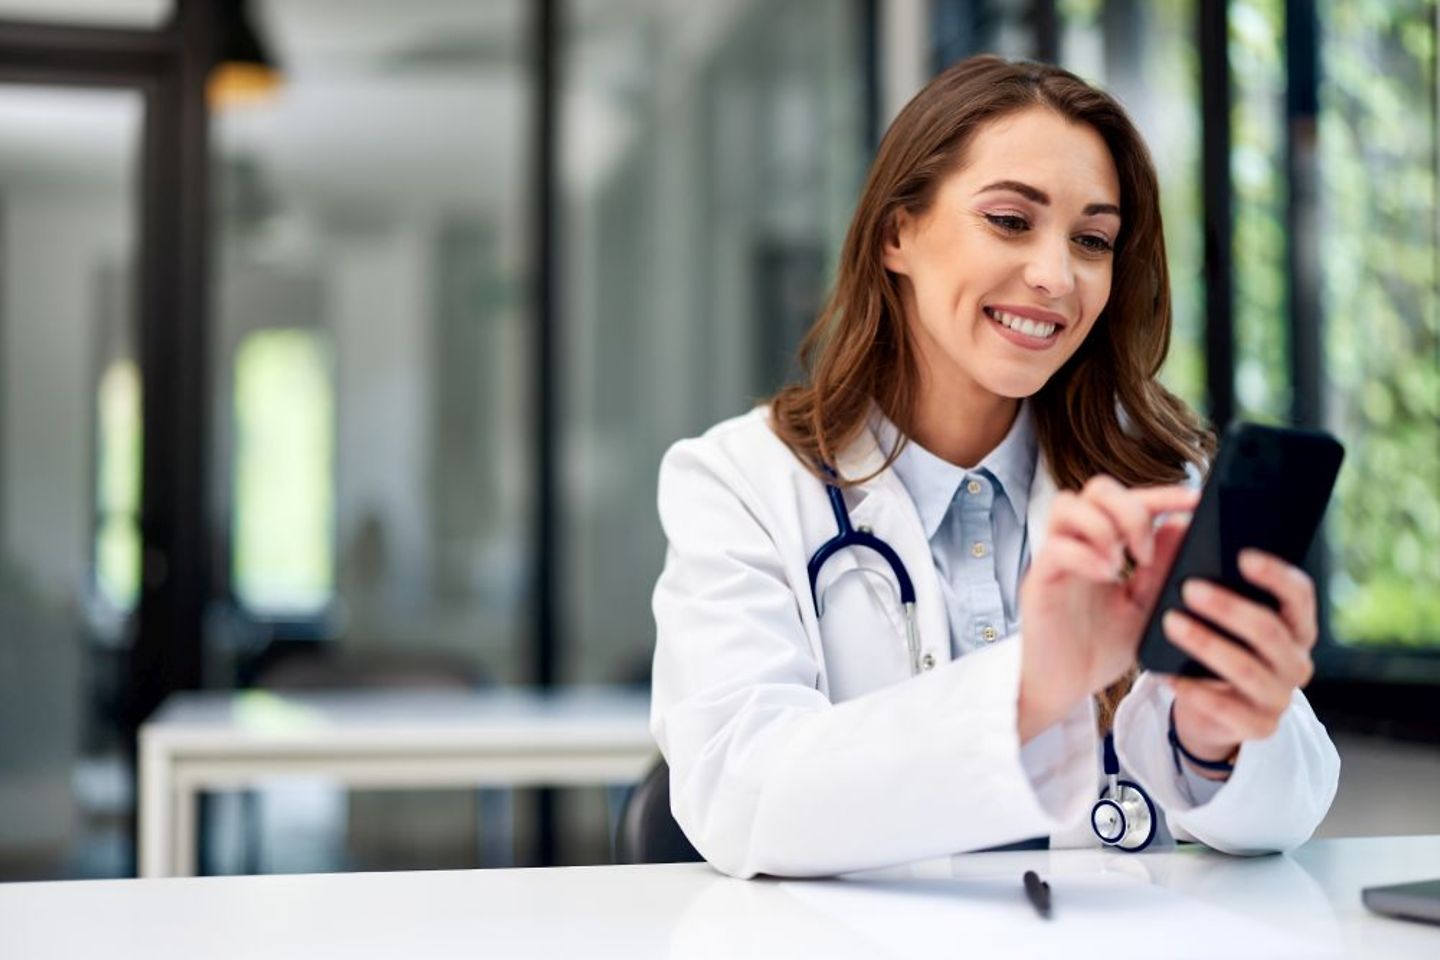 Ärztin leitet vertrauliche Patientenakte verschlüsselt vom Handy an Patienten weiter